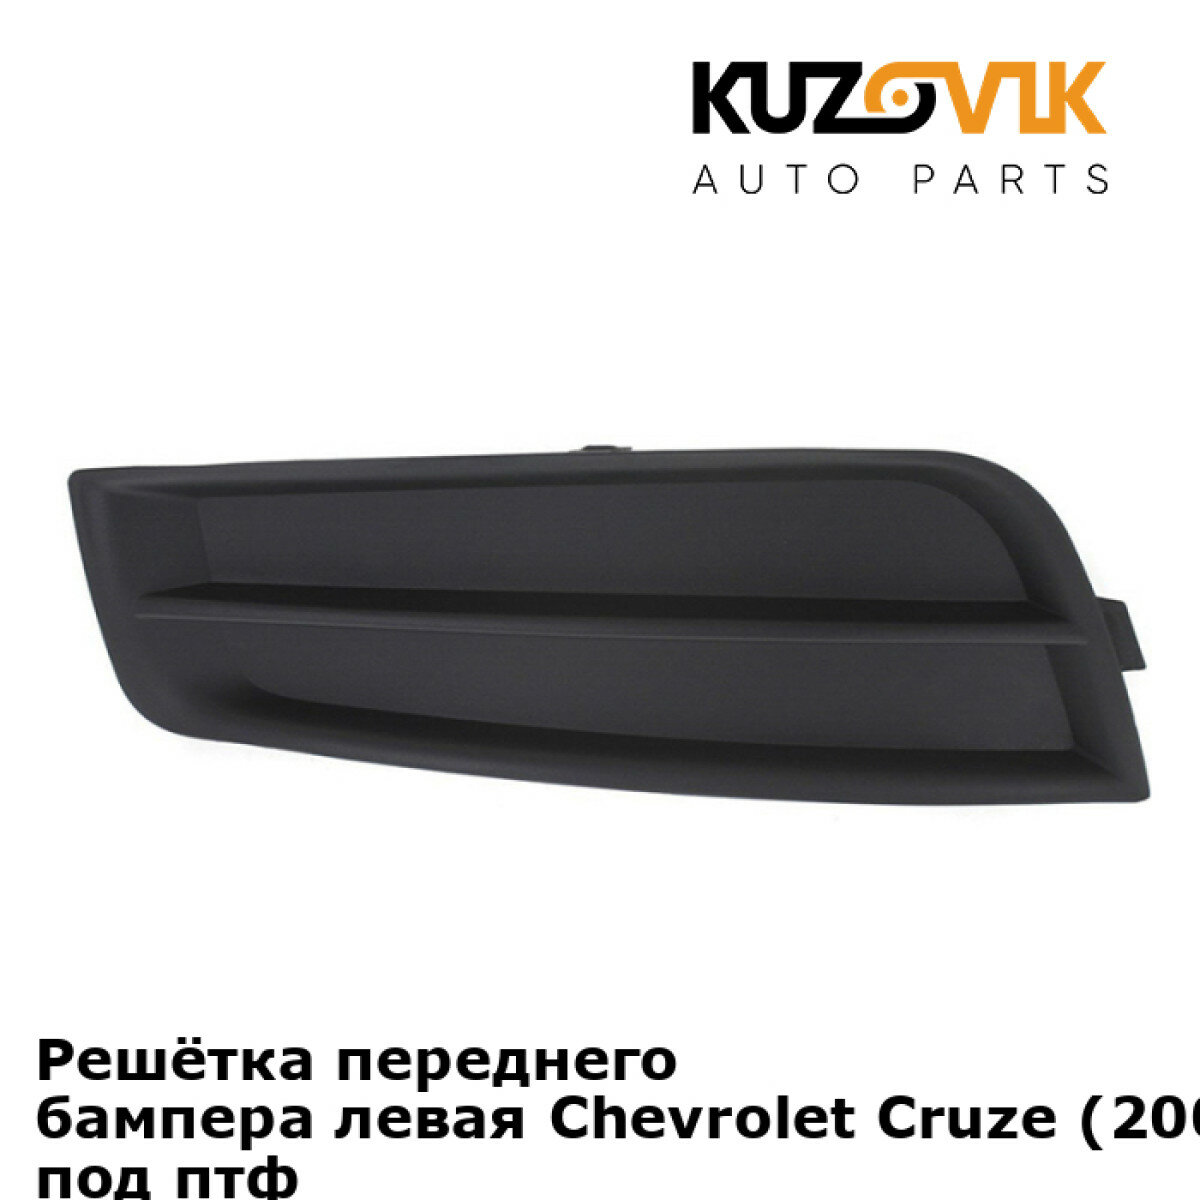 Решётка переднего бампера левая Chevrolet Cruze Шевроле Круз (2009-2012) без отверстия под птф